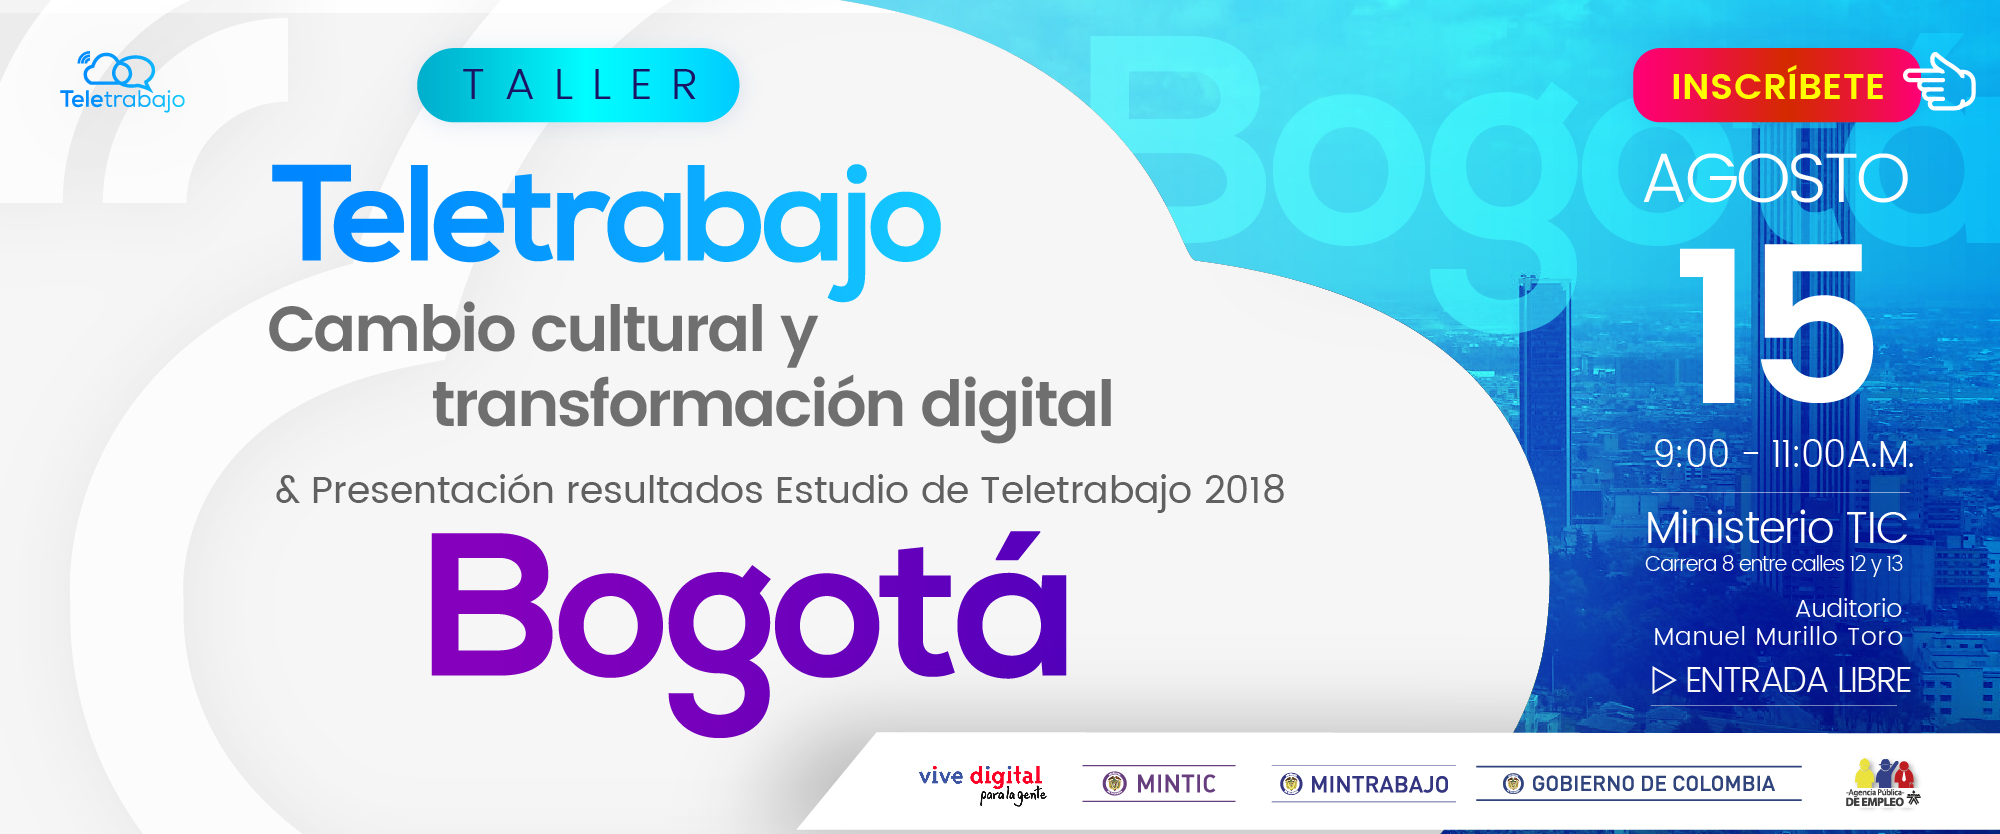 Bogotá Teletrabaja: Taller para su implementación y presentación de resultados nuevo Estudio